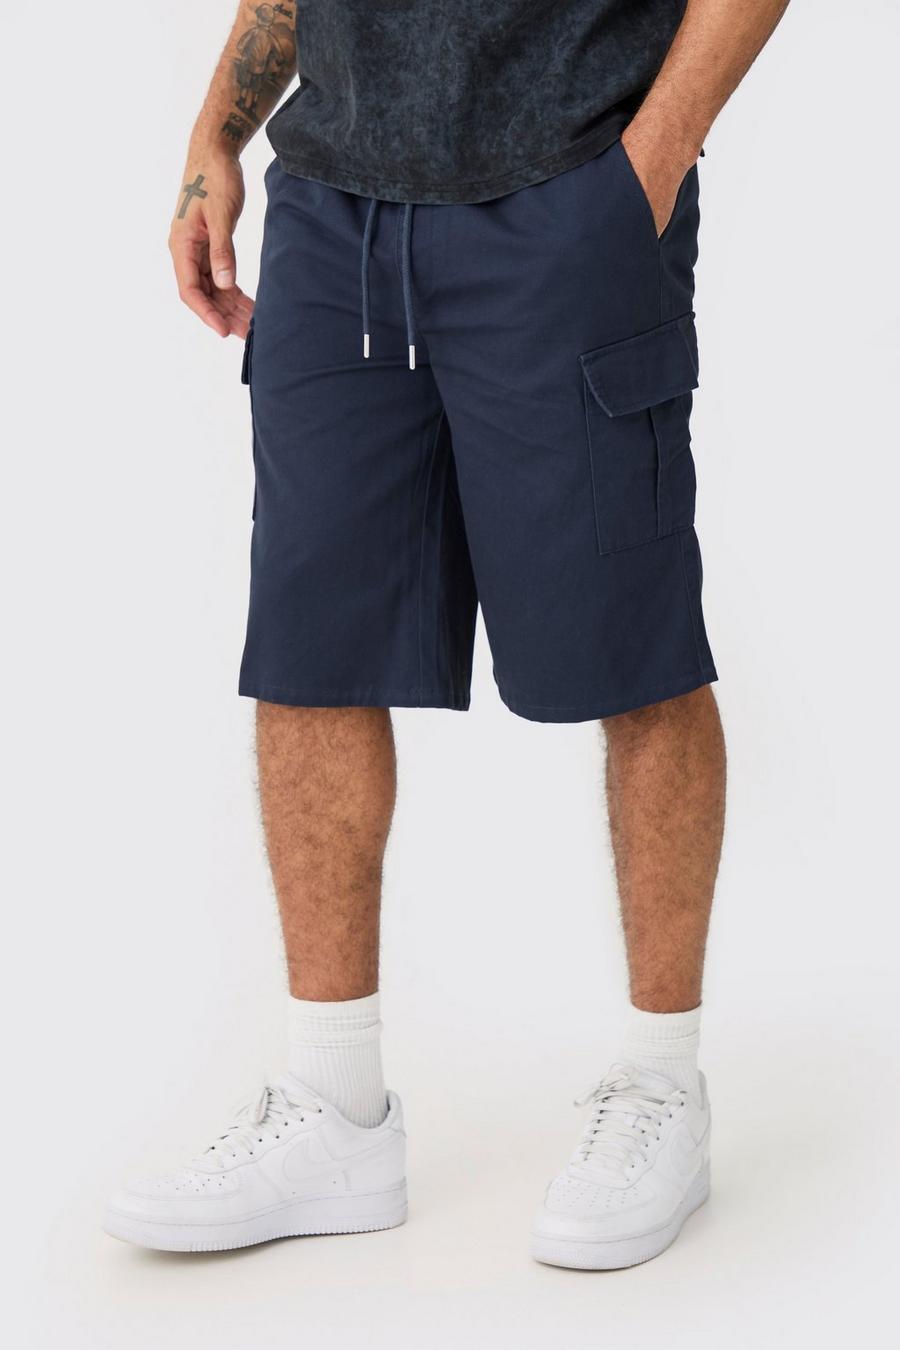 Pantalón corto cargo holgado azul marino con cintura elástica, Navy